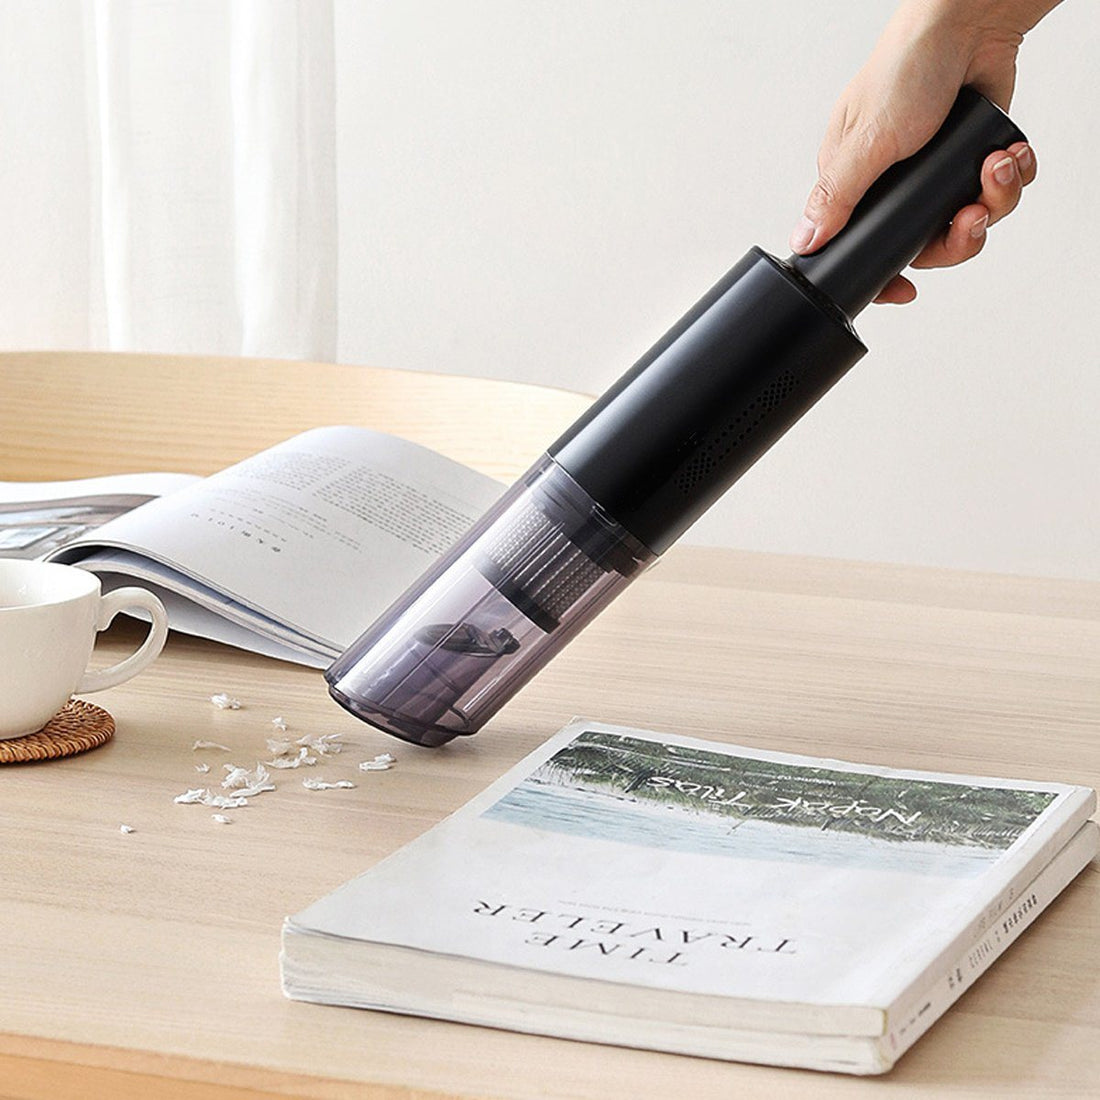 Mr. Dustbuster wireless handheld vacuum for car and home - Mr. Dustbuster draadloze handstofzuiger voor auto en huis